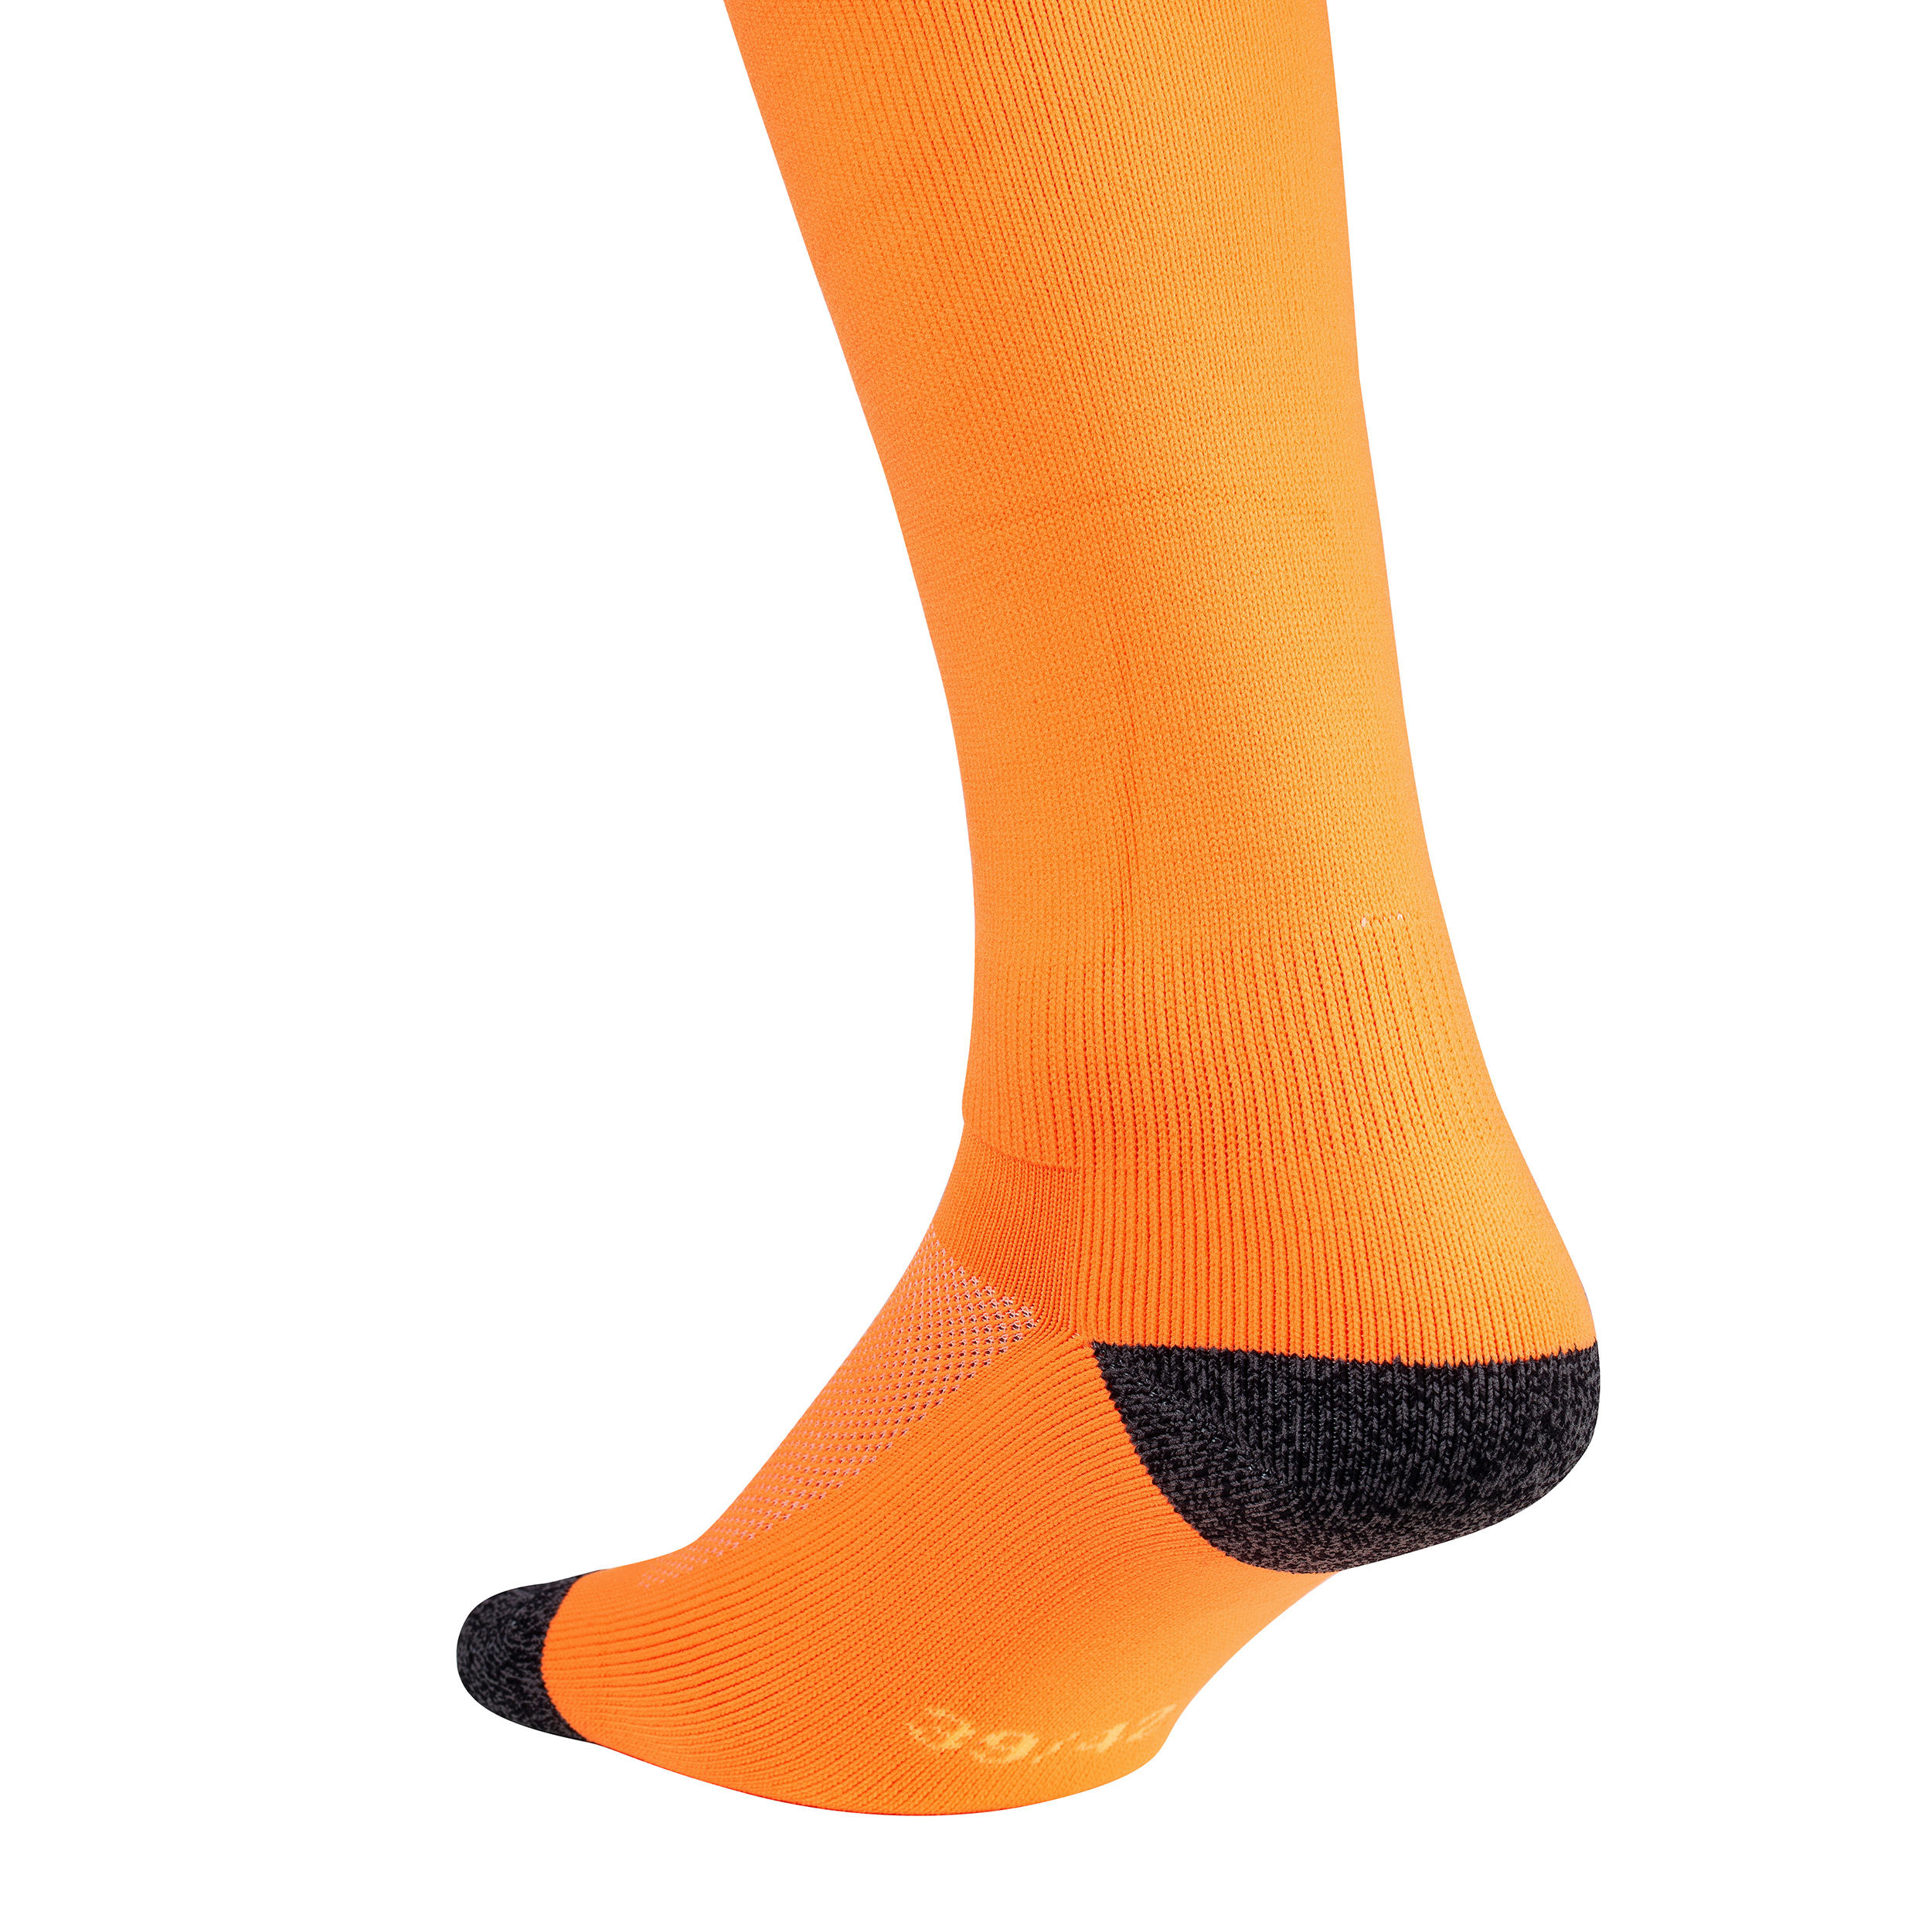 Adult Field Hockey Socks FH500 - Neon Orange 2/4